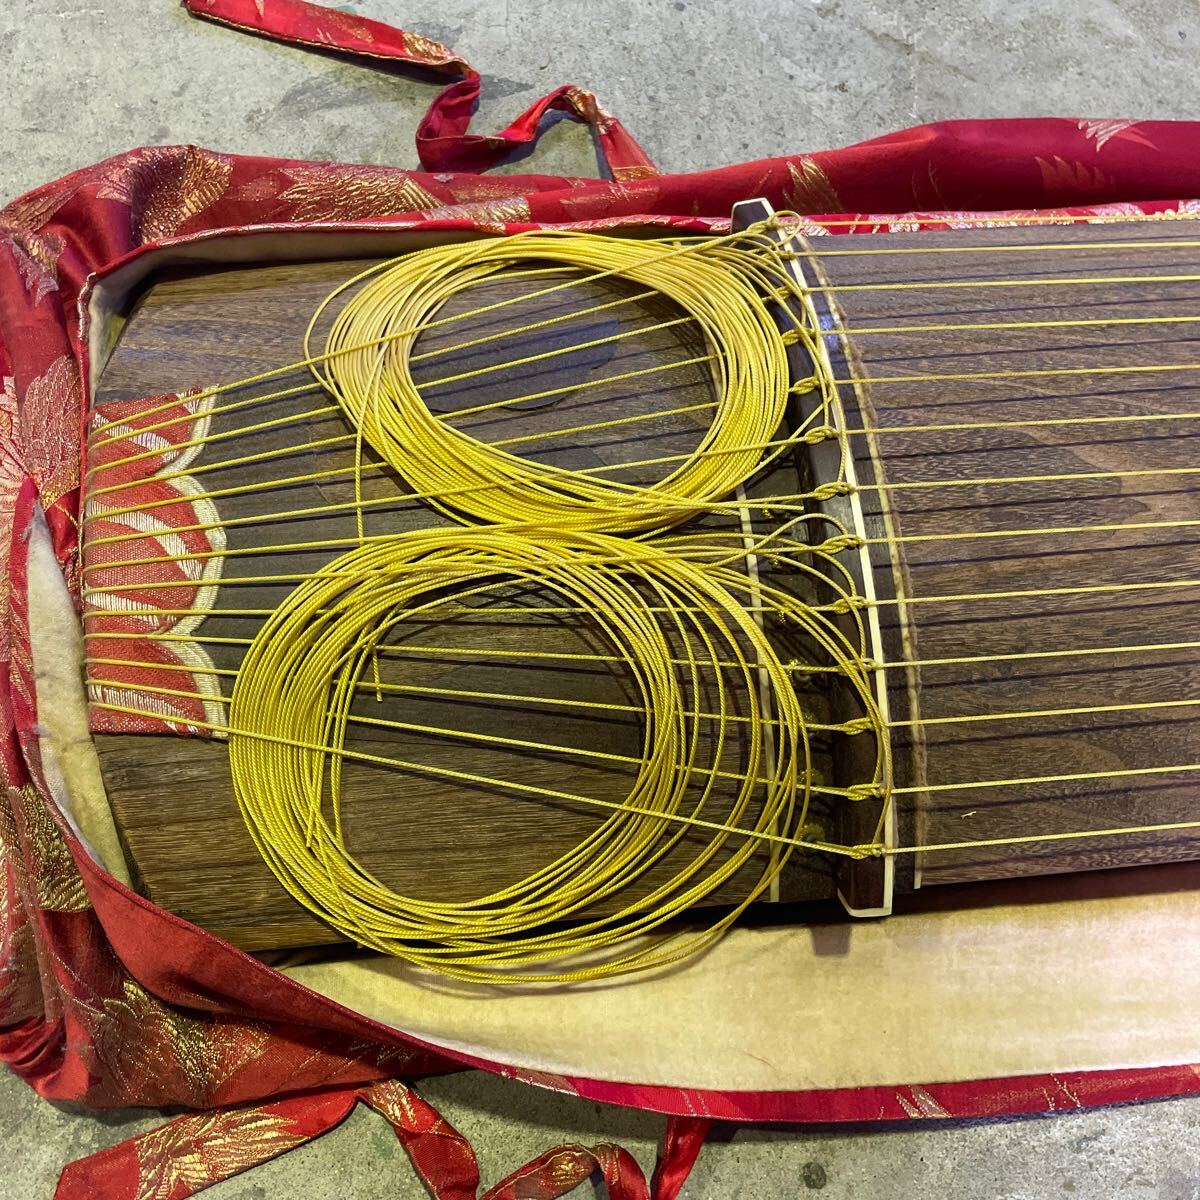  кото ( сякухати пакет ) традиционные японские музыкальные инструменты кото 13 струна традиционное искусство традиция музыкальные инструменты подробности неизвестен 